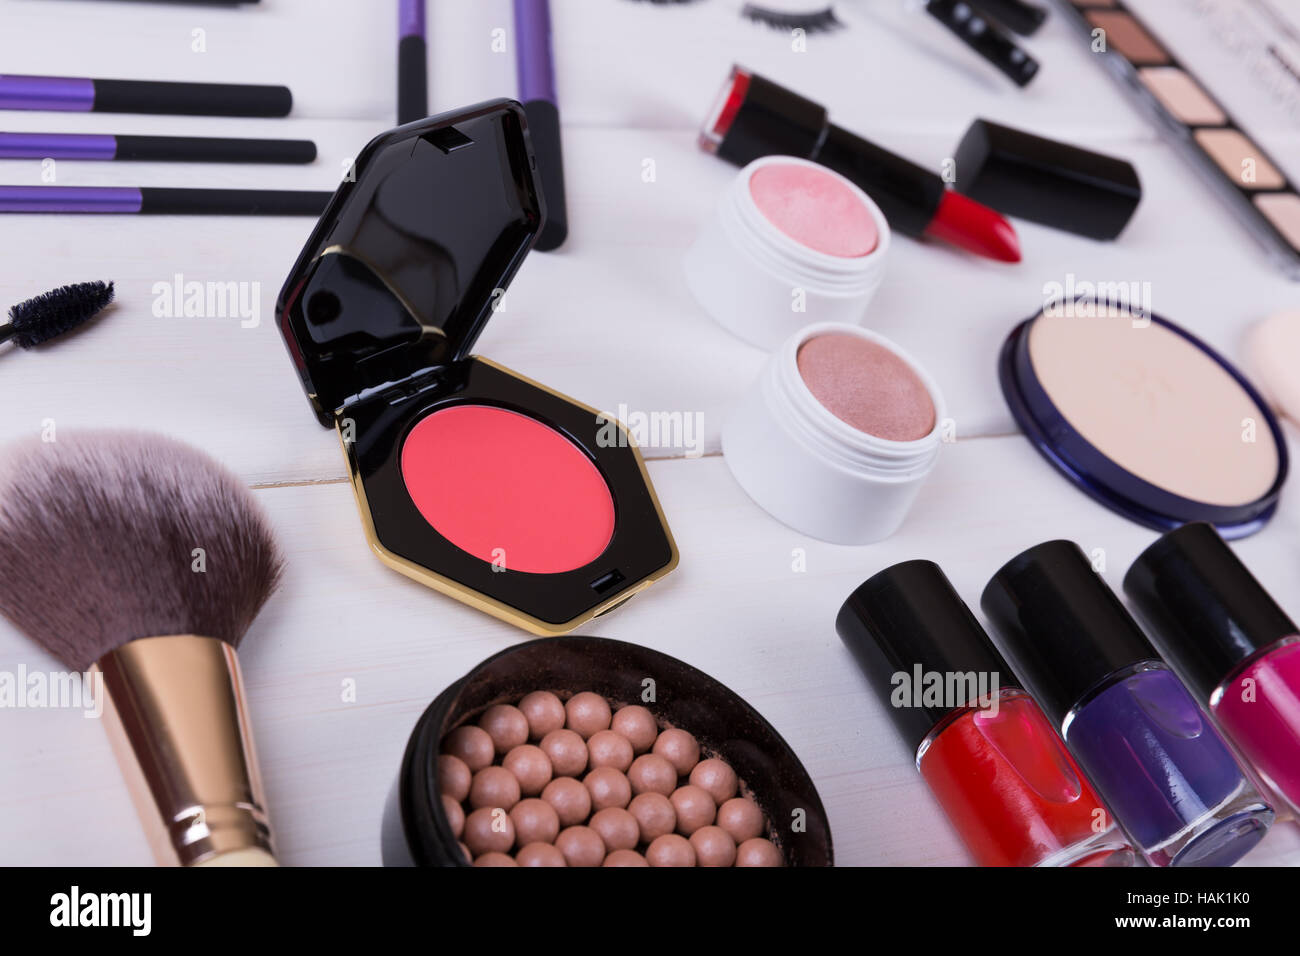 Colección de maquillaje productos cosméticos sobre la mesa de madera Foto de stock